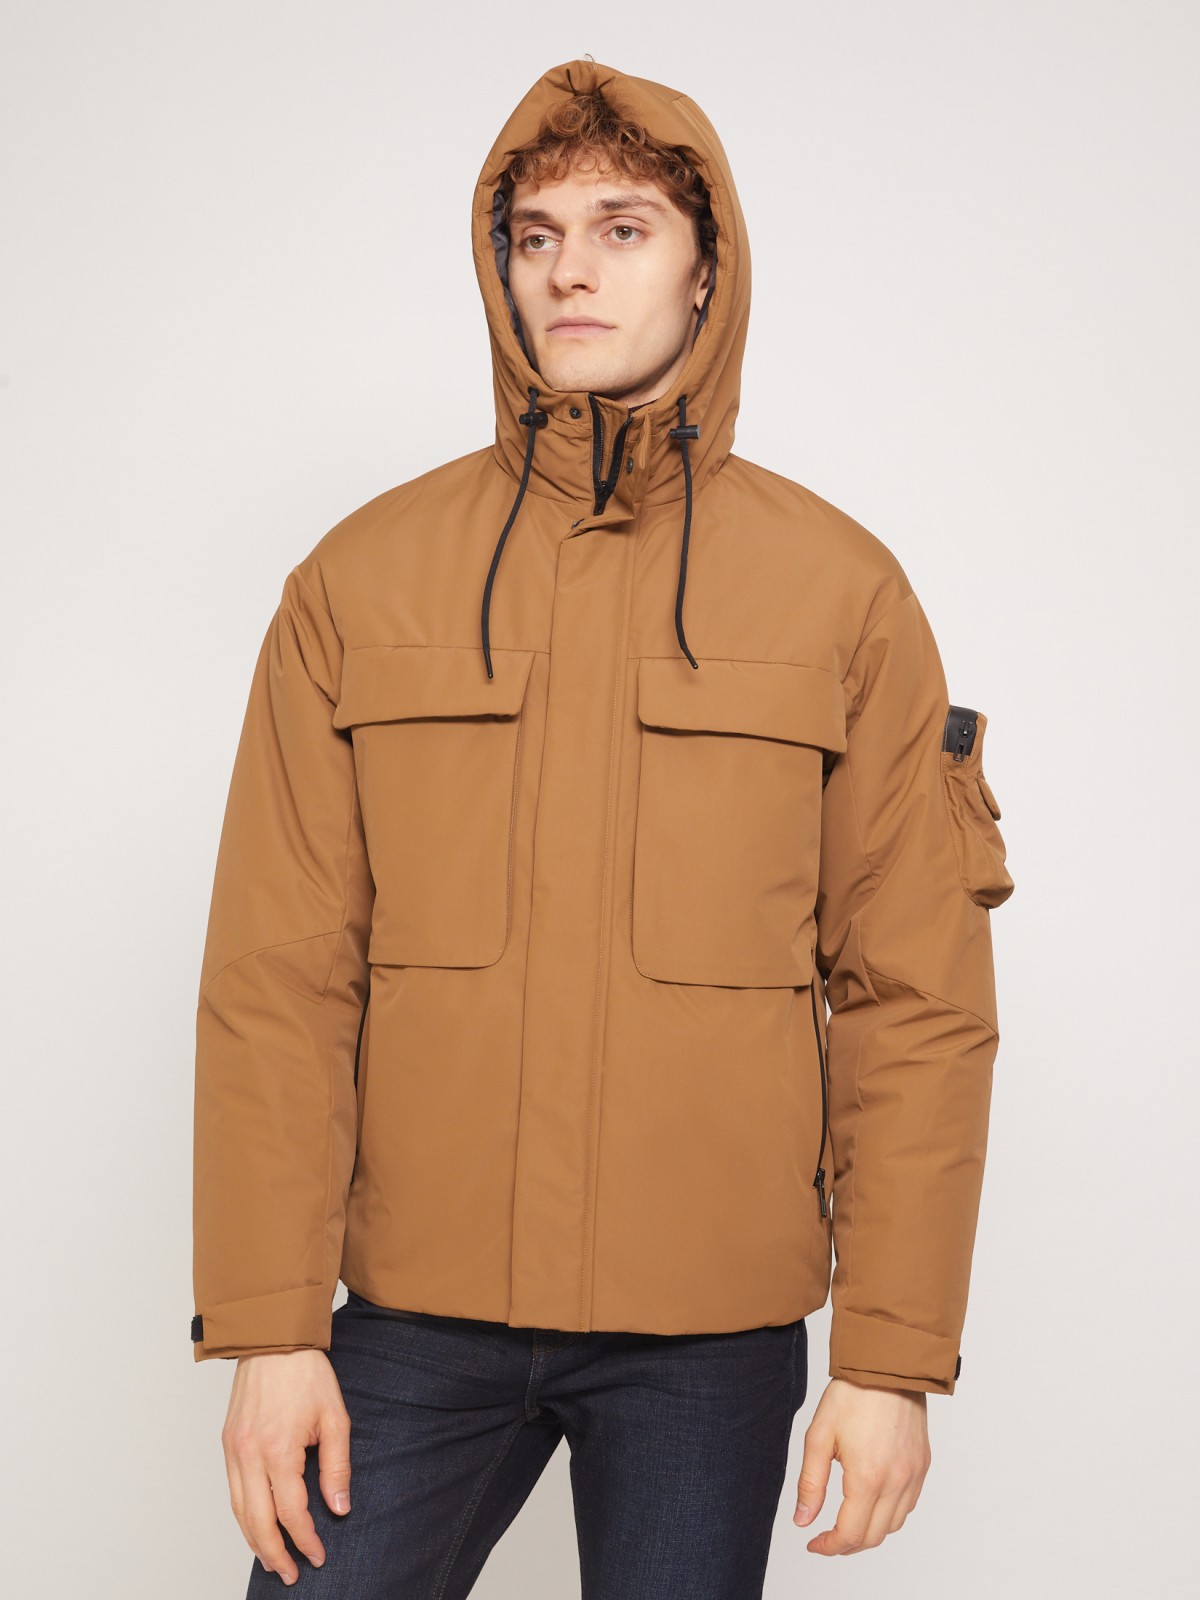 Утеплённая куртка с накладными карманами и капюшоном zolla 011335102244, цвет горчичный, размер S - фото 5